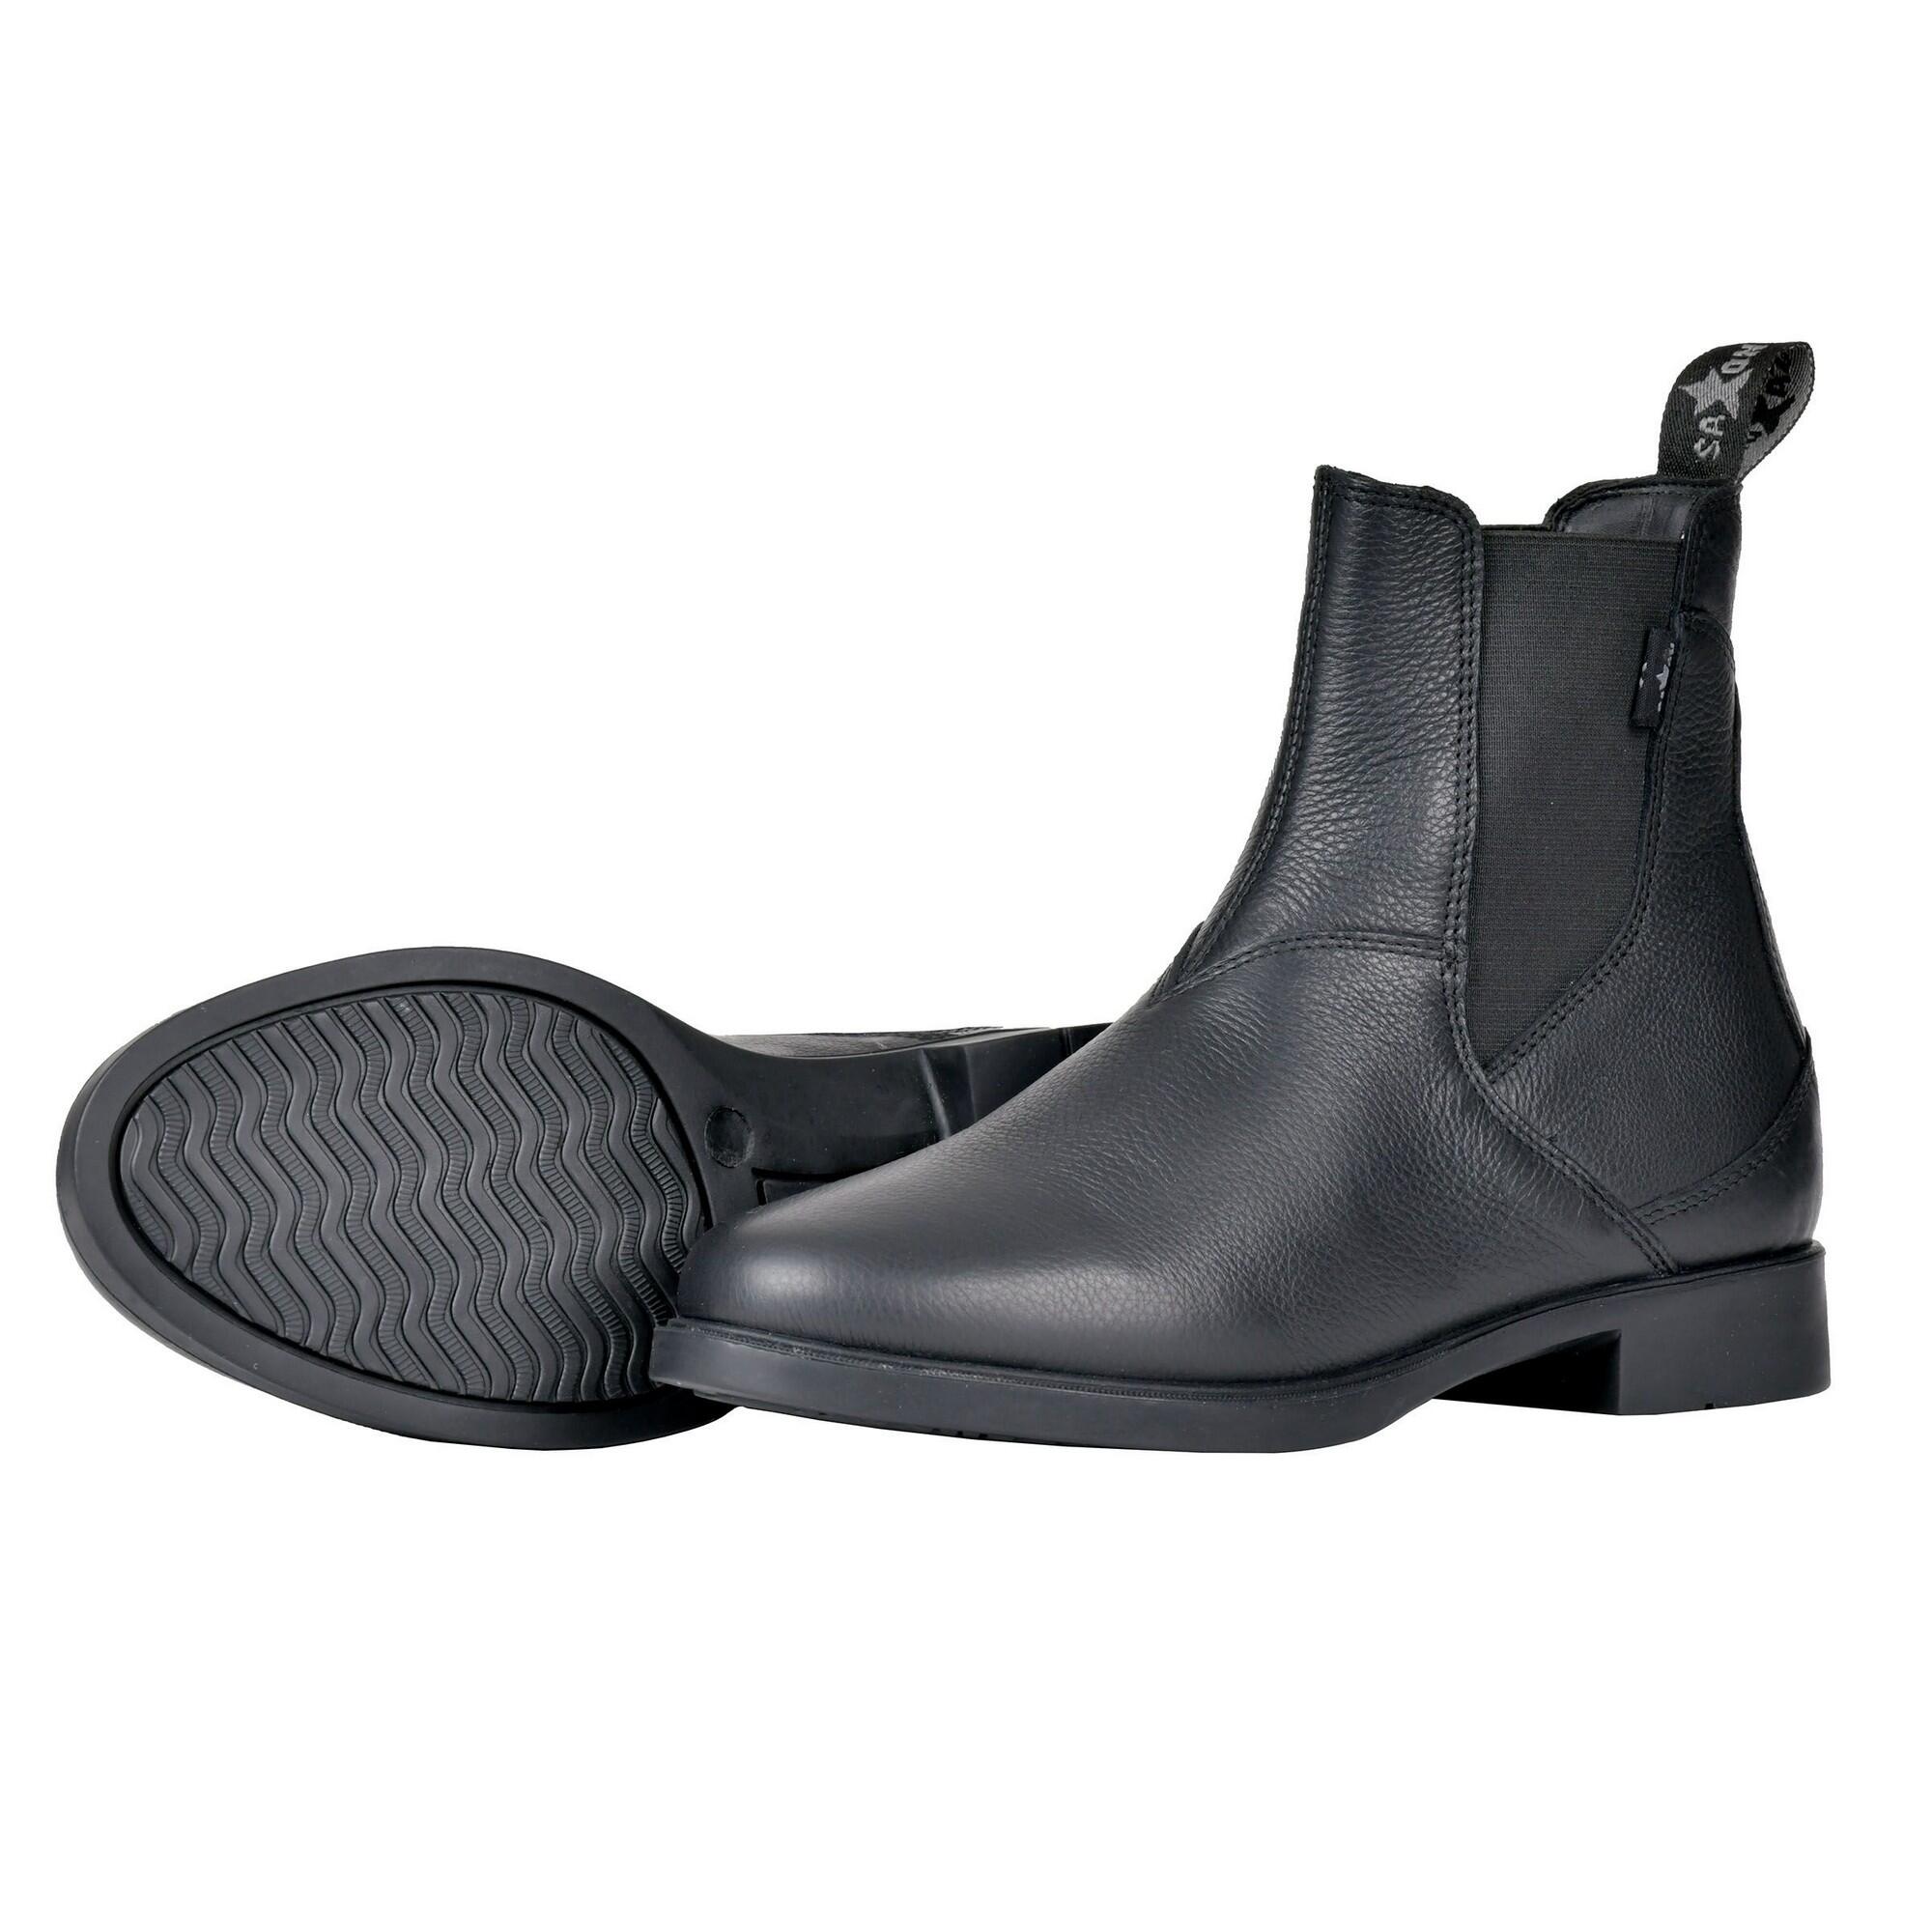 Unisex Adult Allyn Leather Jodhpur Boots (Black) 1/2